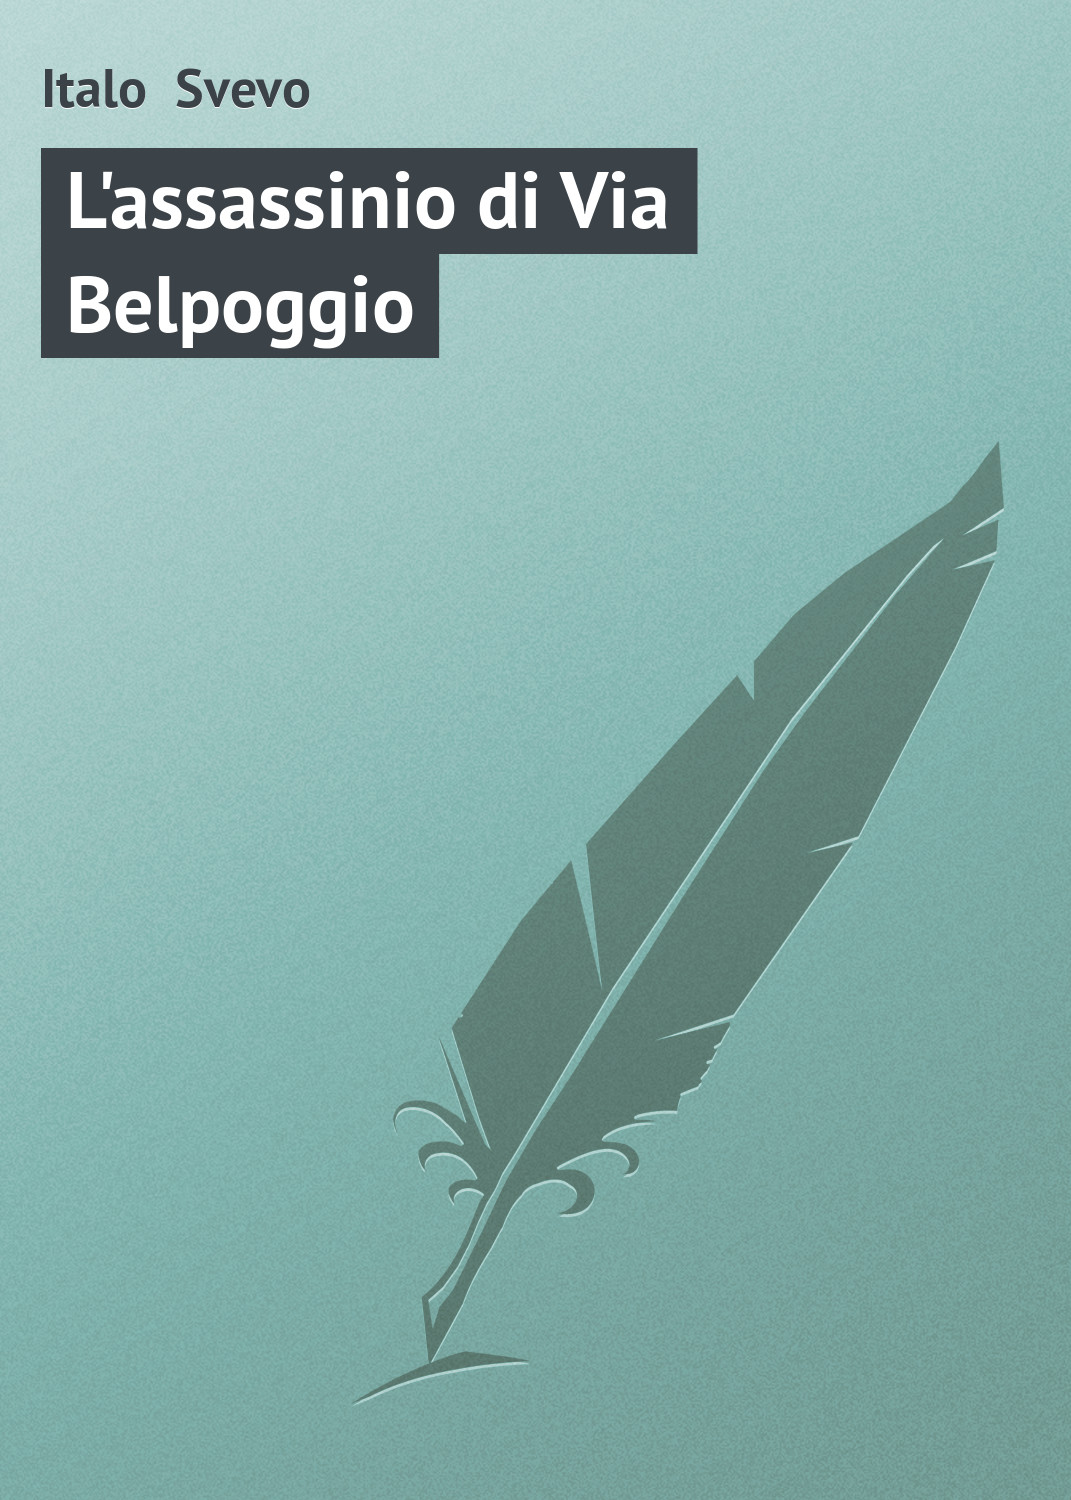 Книга L'assassinio di Via Belpoggio из серии , созданная Italo Svevo, может относится к жанру Зарубежная старинная литература, Зарубежная классика. Стоимость электронной книги L'assassinio di Via Belpoggio с идентификатором 21103862 составляет 5.99 руб.